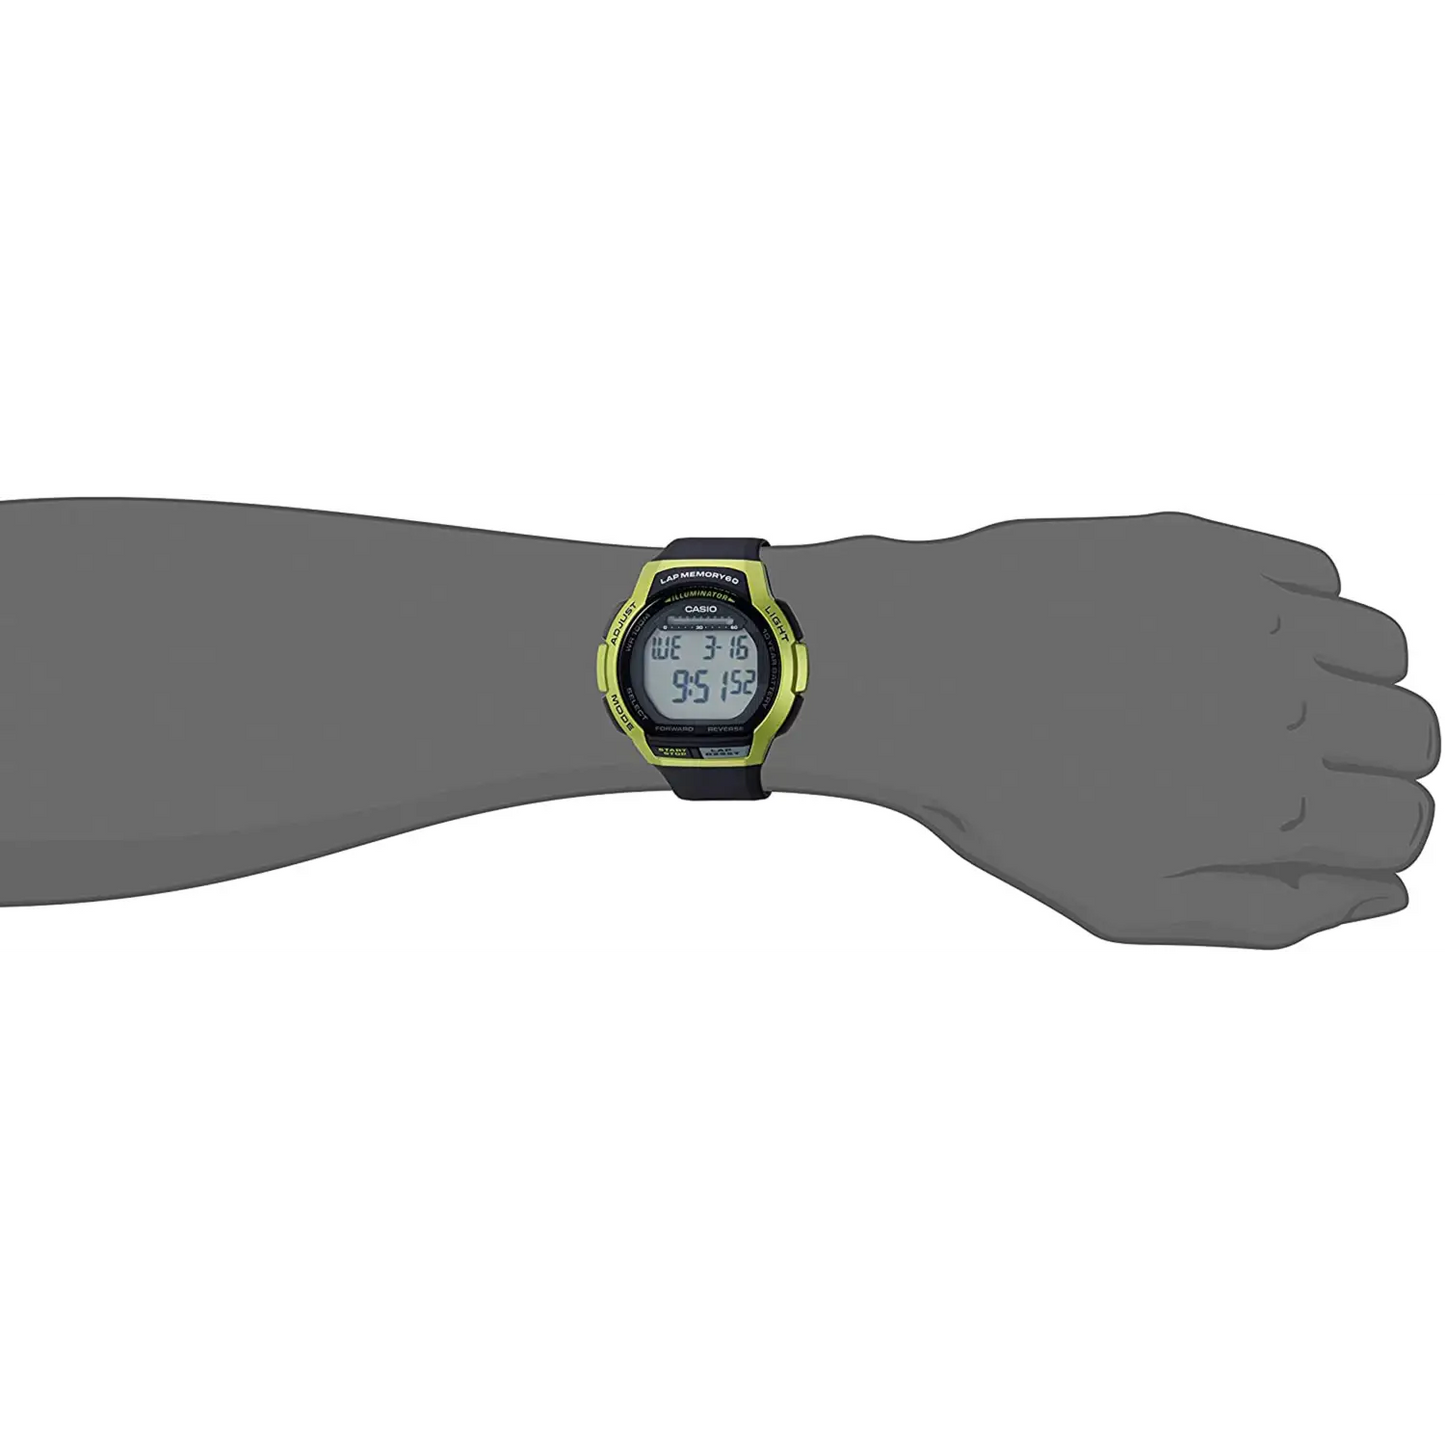 Casio Men’s Classic Digital Quartz 100m Black Resin Watch